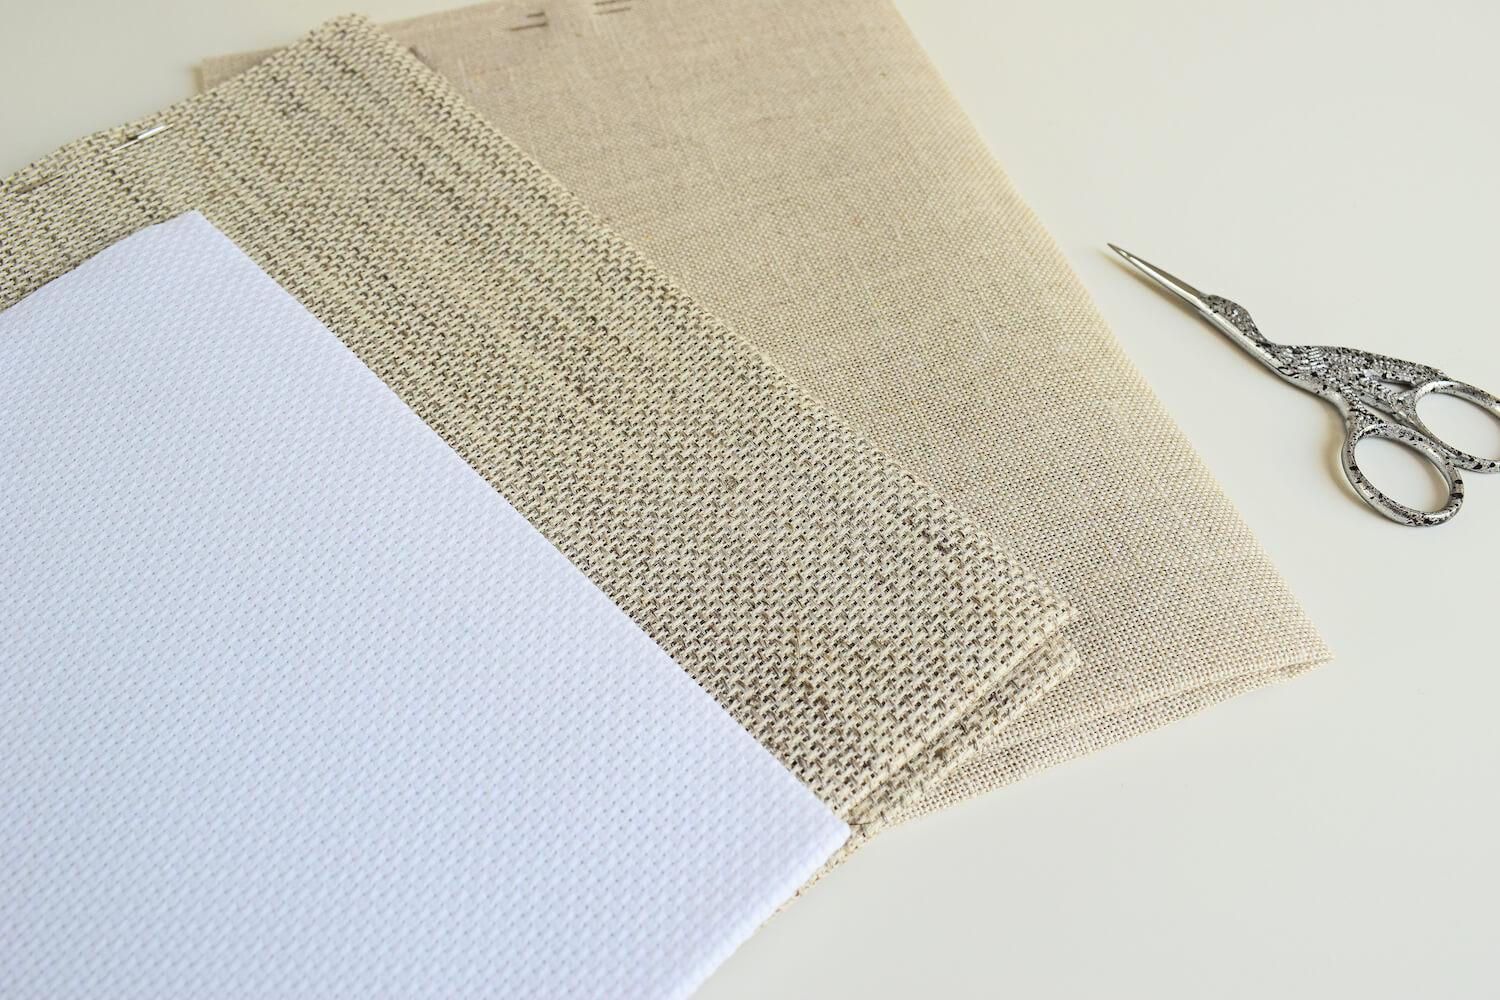 Types of cross stitch fabric